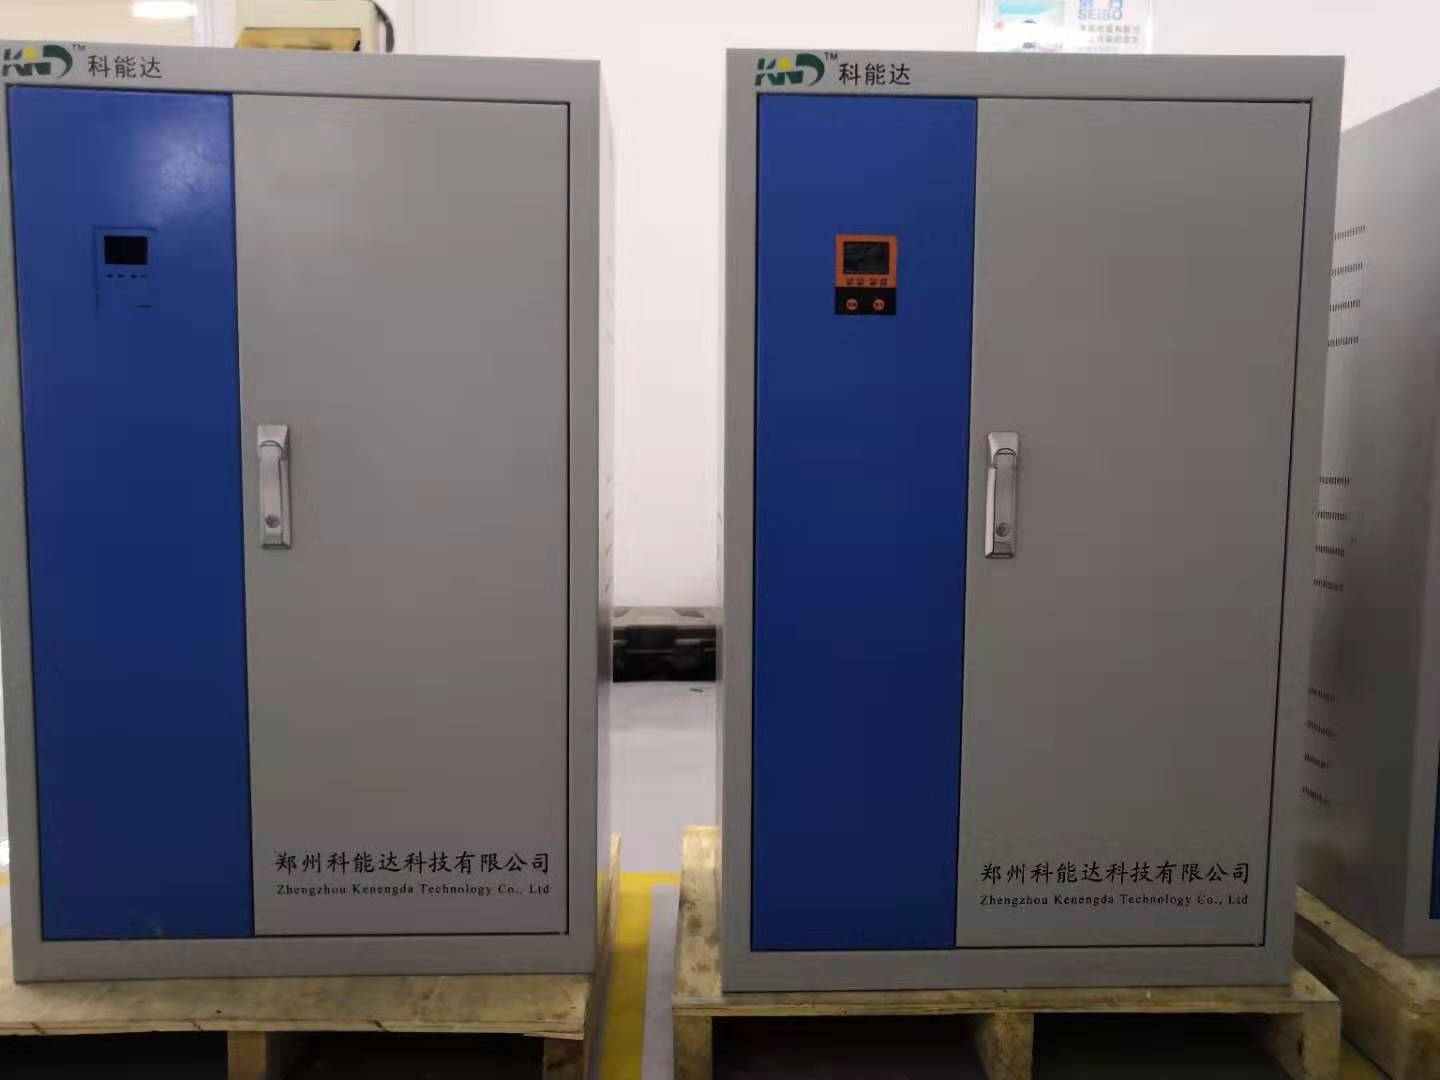 河南郑州eps电源厂家科能达提供eps应急电源组成部分